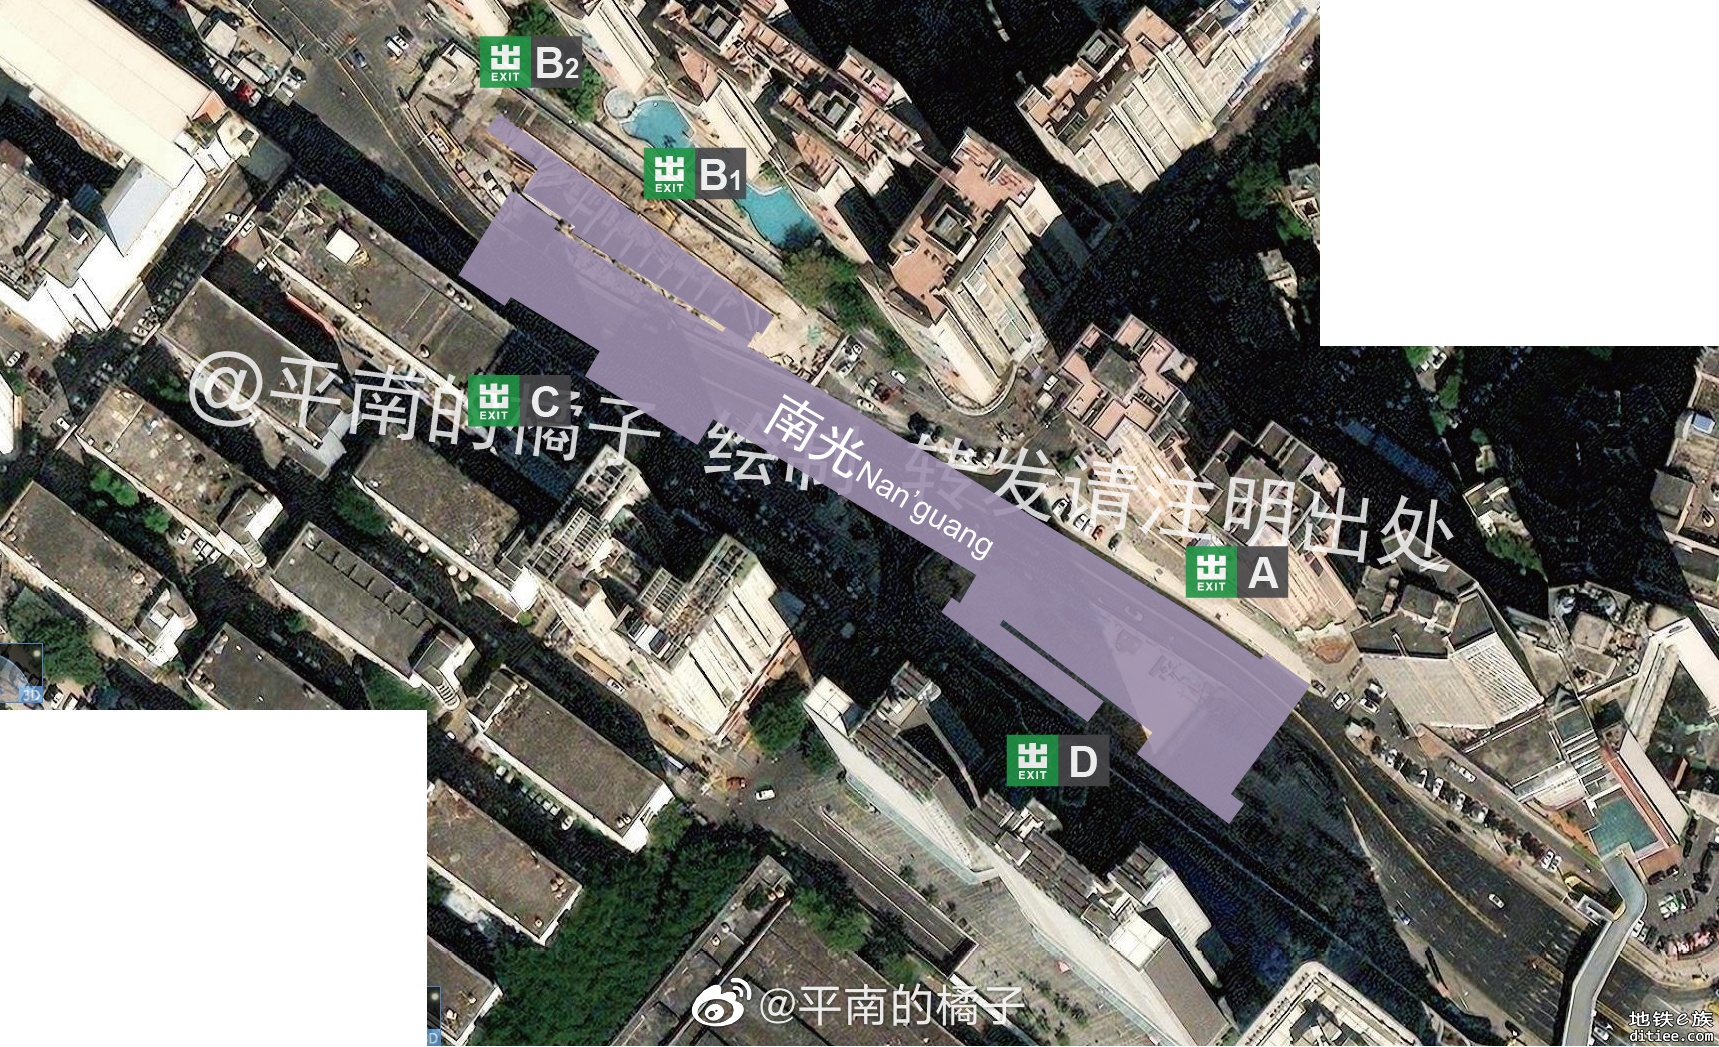 【出入口】深圳地铁12号线出入口合集